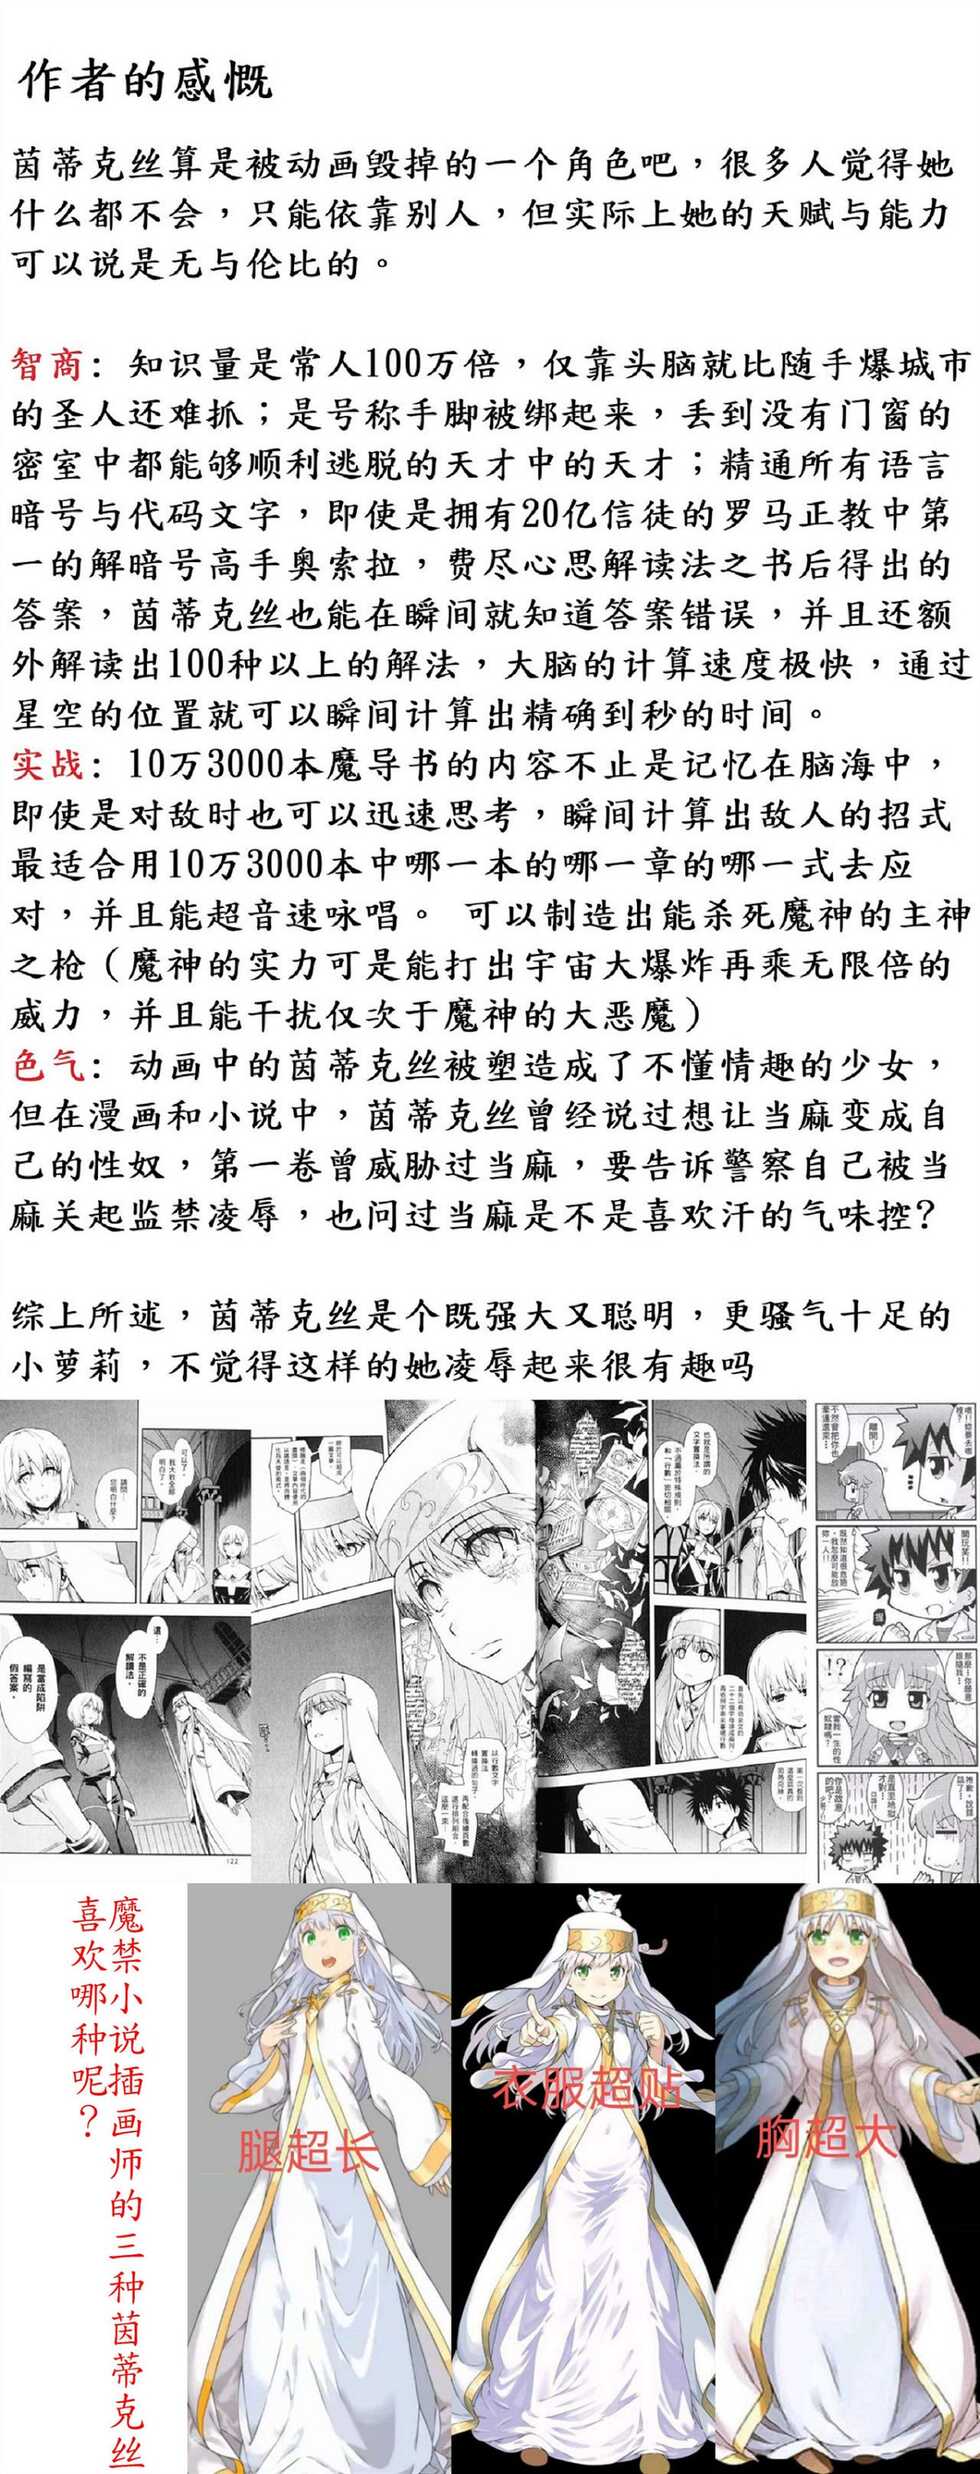 茵蒂克丝:你们谁先让我高潮我就嫁给谁(Toaru Majutsu no Index) [Chinese] - Page 13